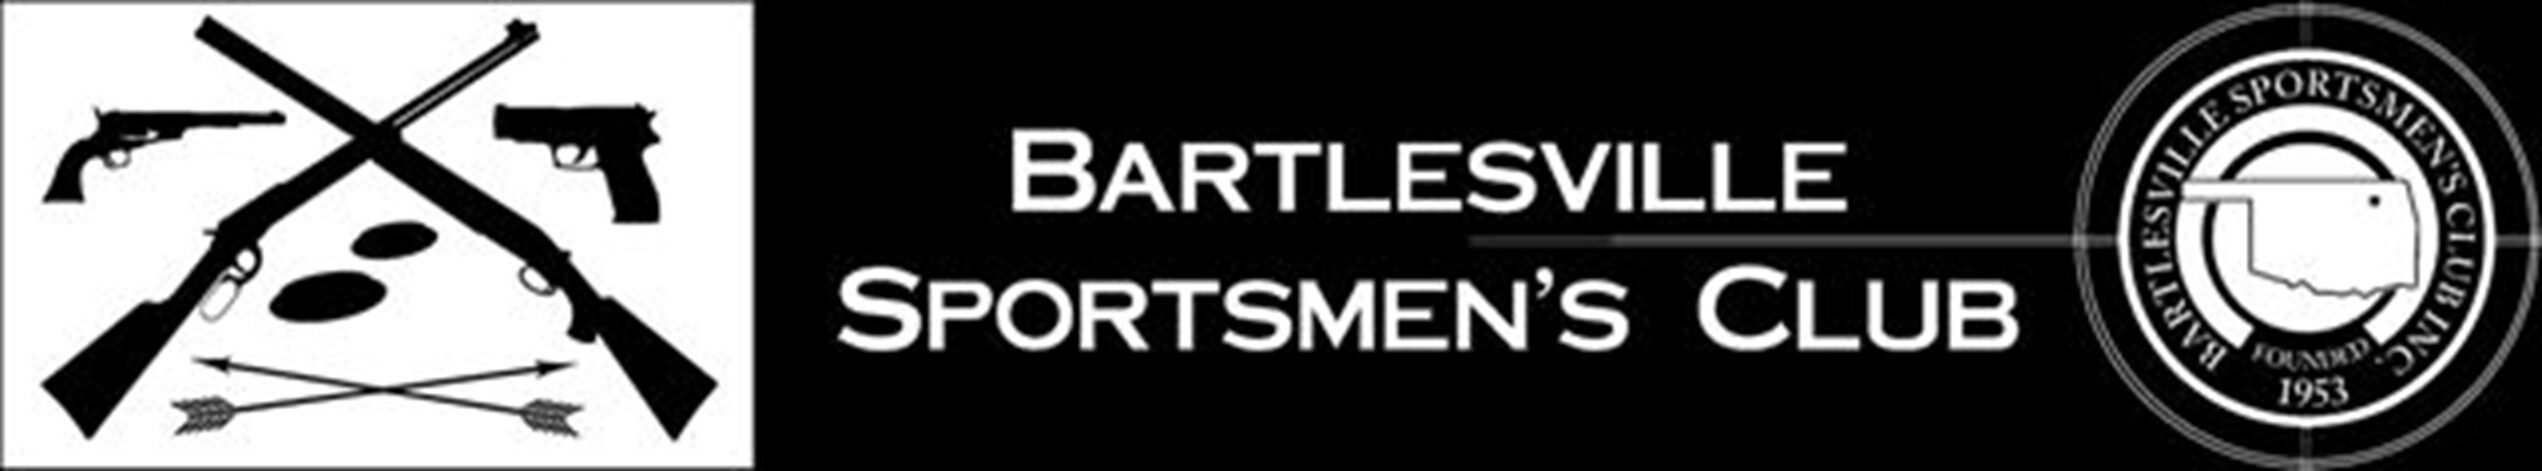 Bartlesville Sportsmen's Club